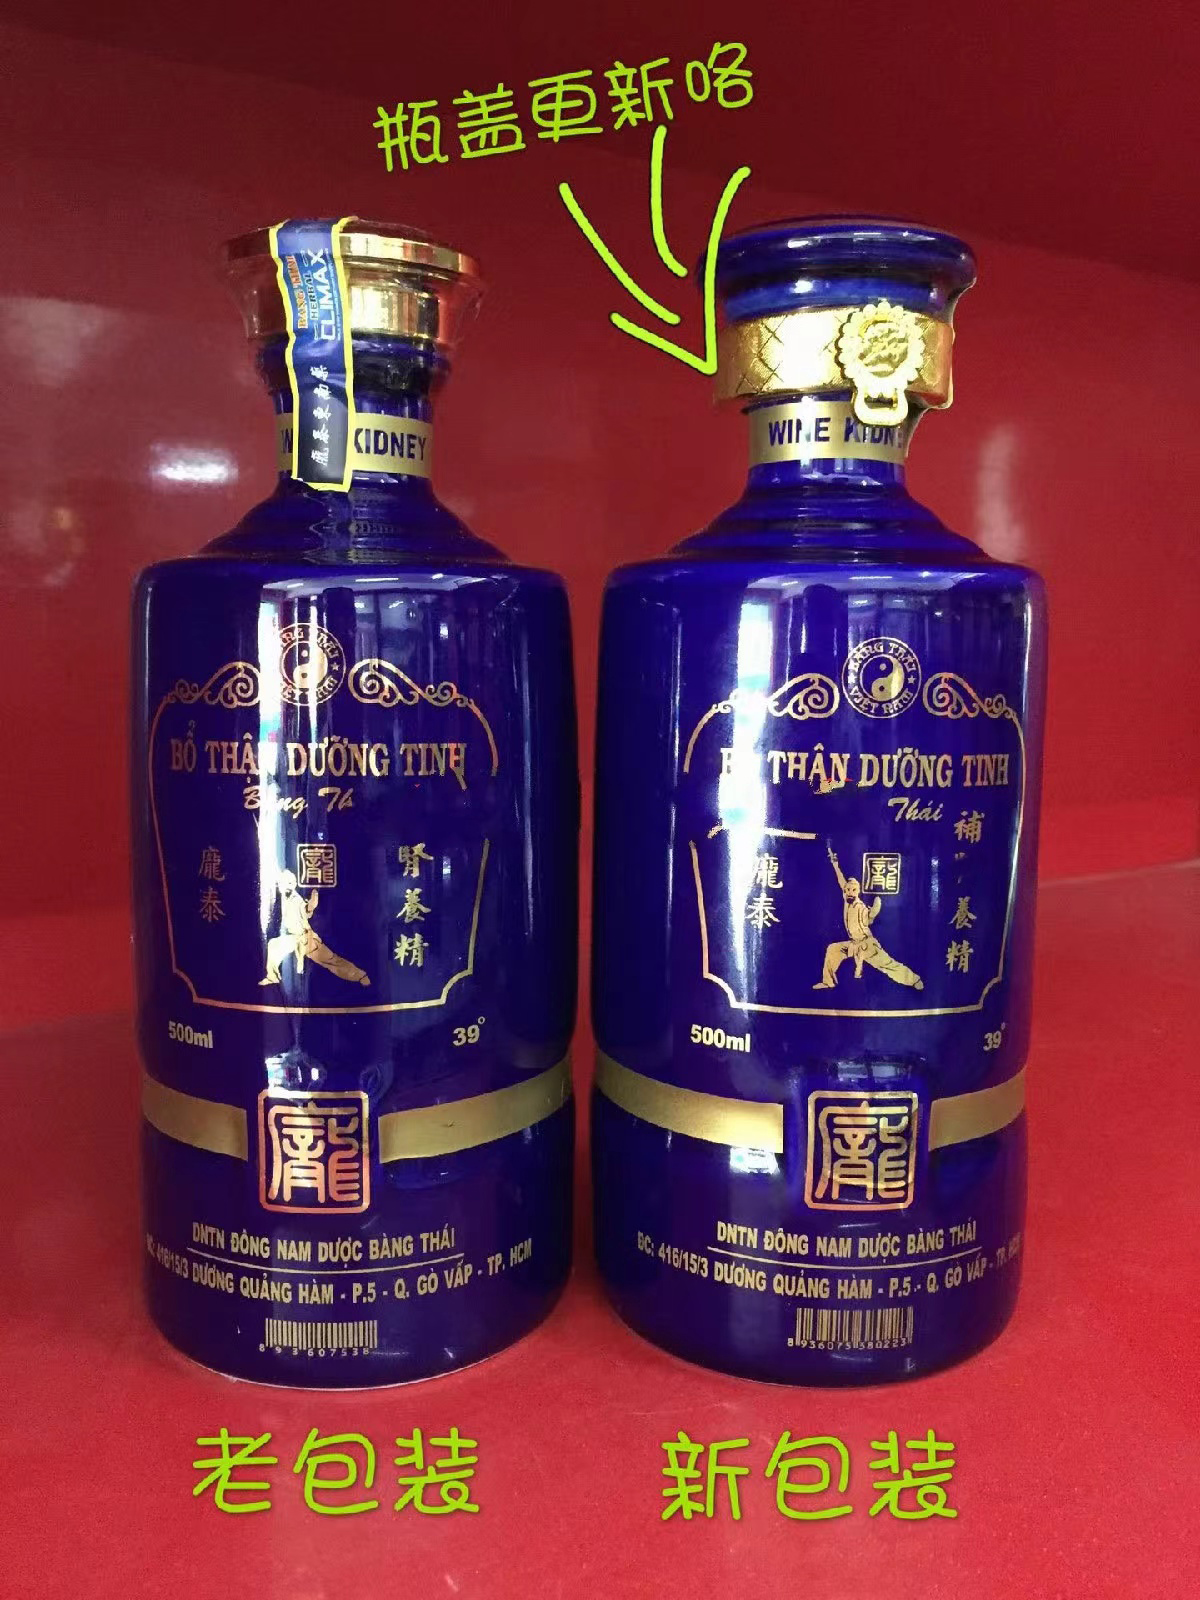 正品越南庞泰酒原装进口男性养生保健酒龎泰玛咖蓝瓶特产补酒礼品